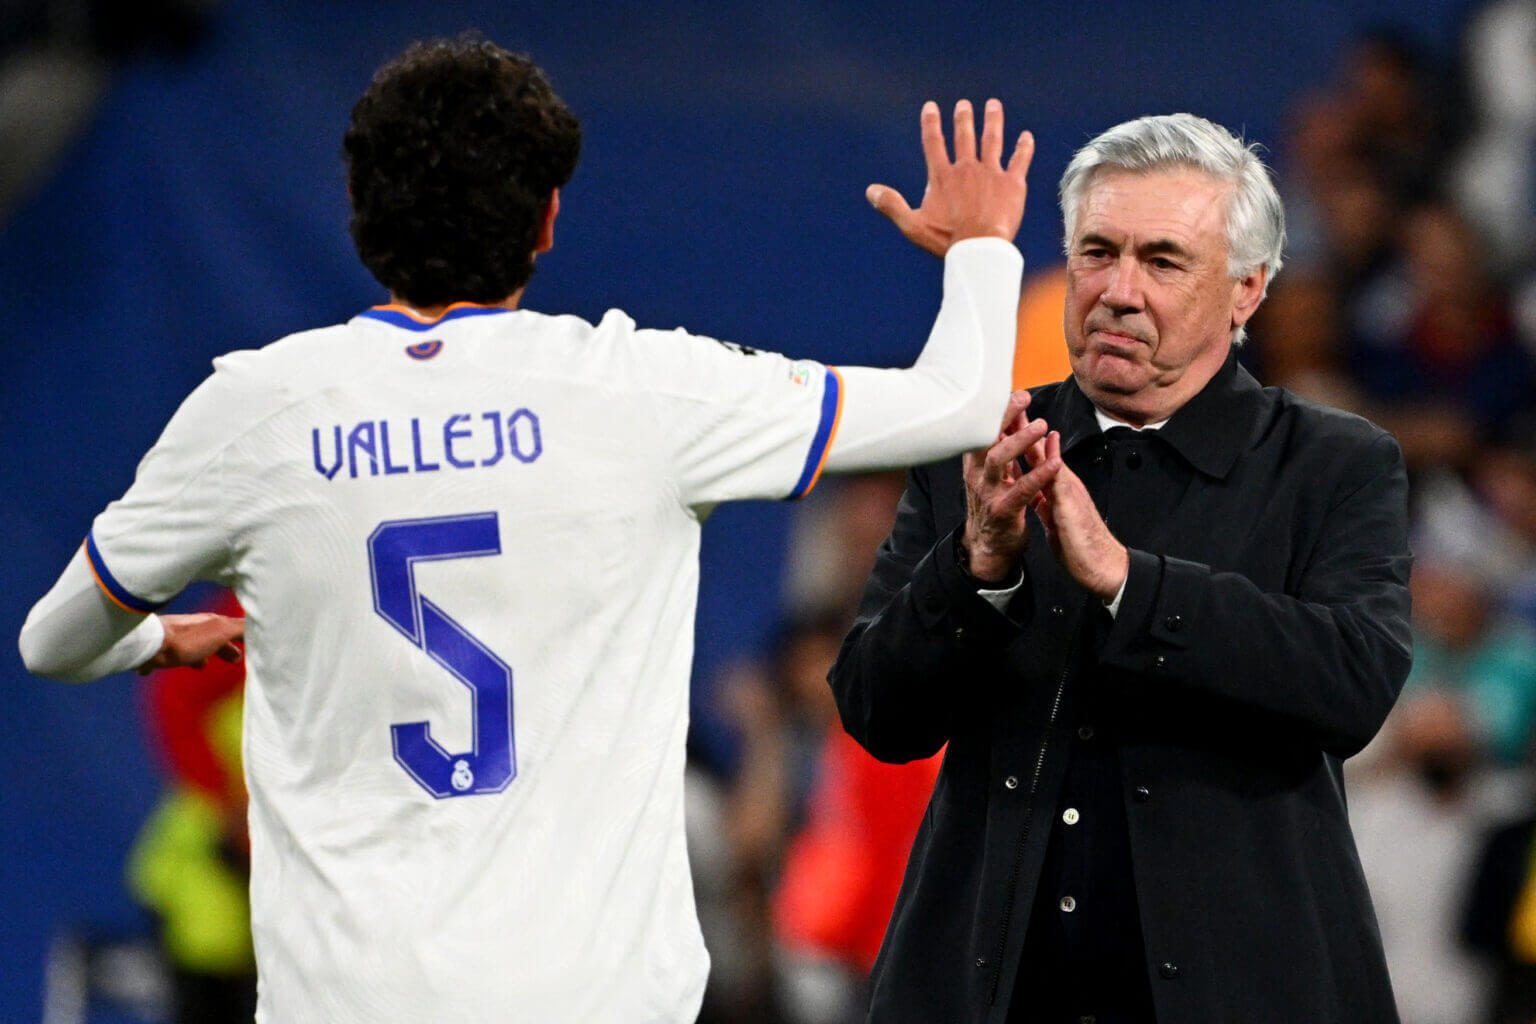 Ancelotti úy lạo kép phụ Vallero sau khi đánh bại Man City ở vòng bán kết Champions League 2021/22